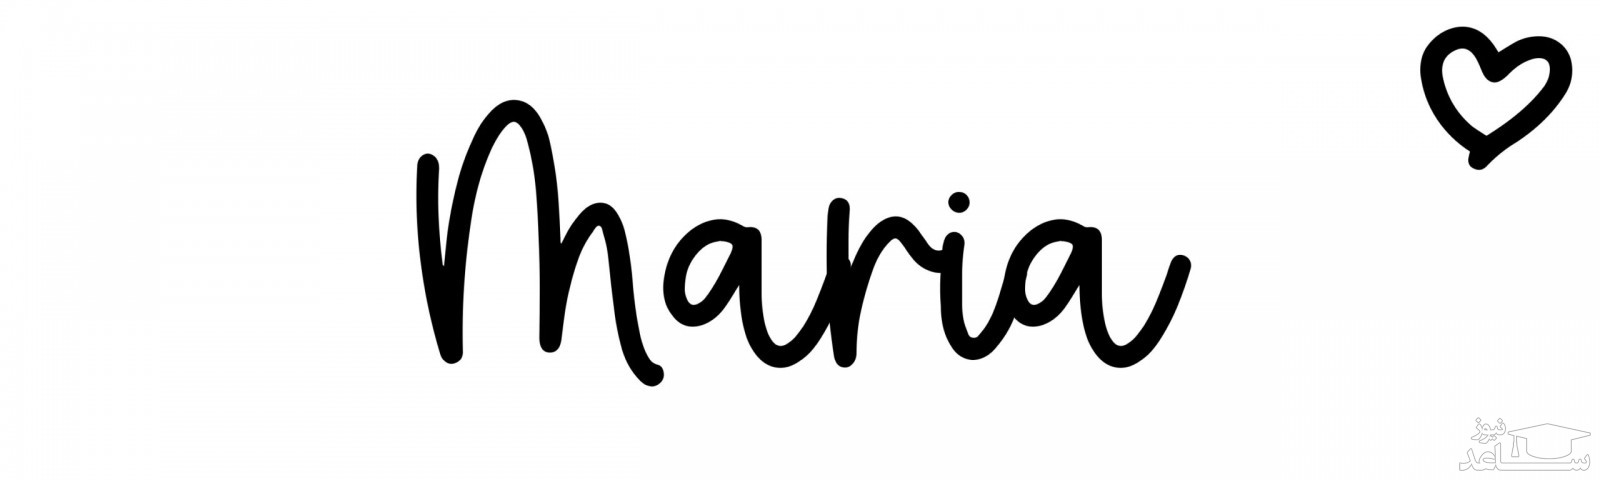 انتخاب اسم ماریا برای کودک